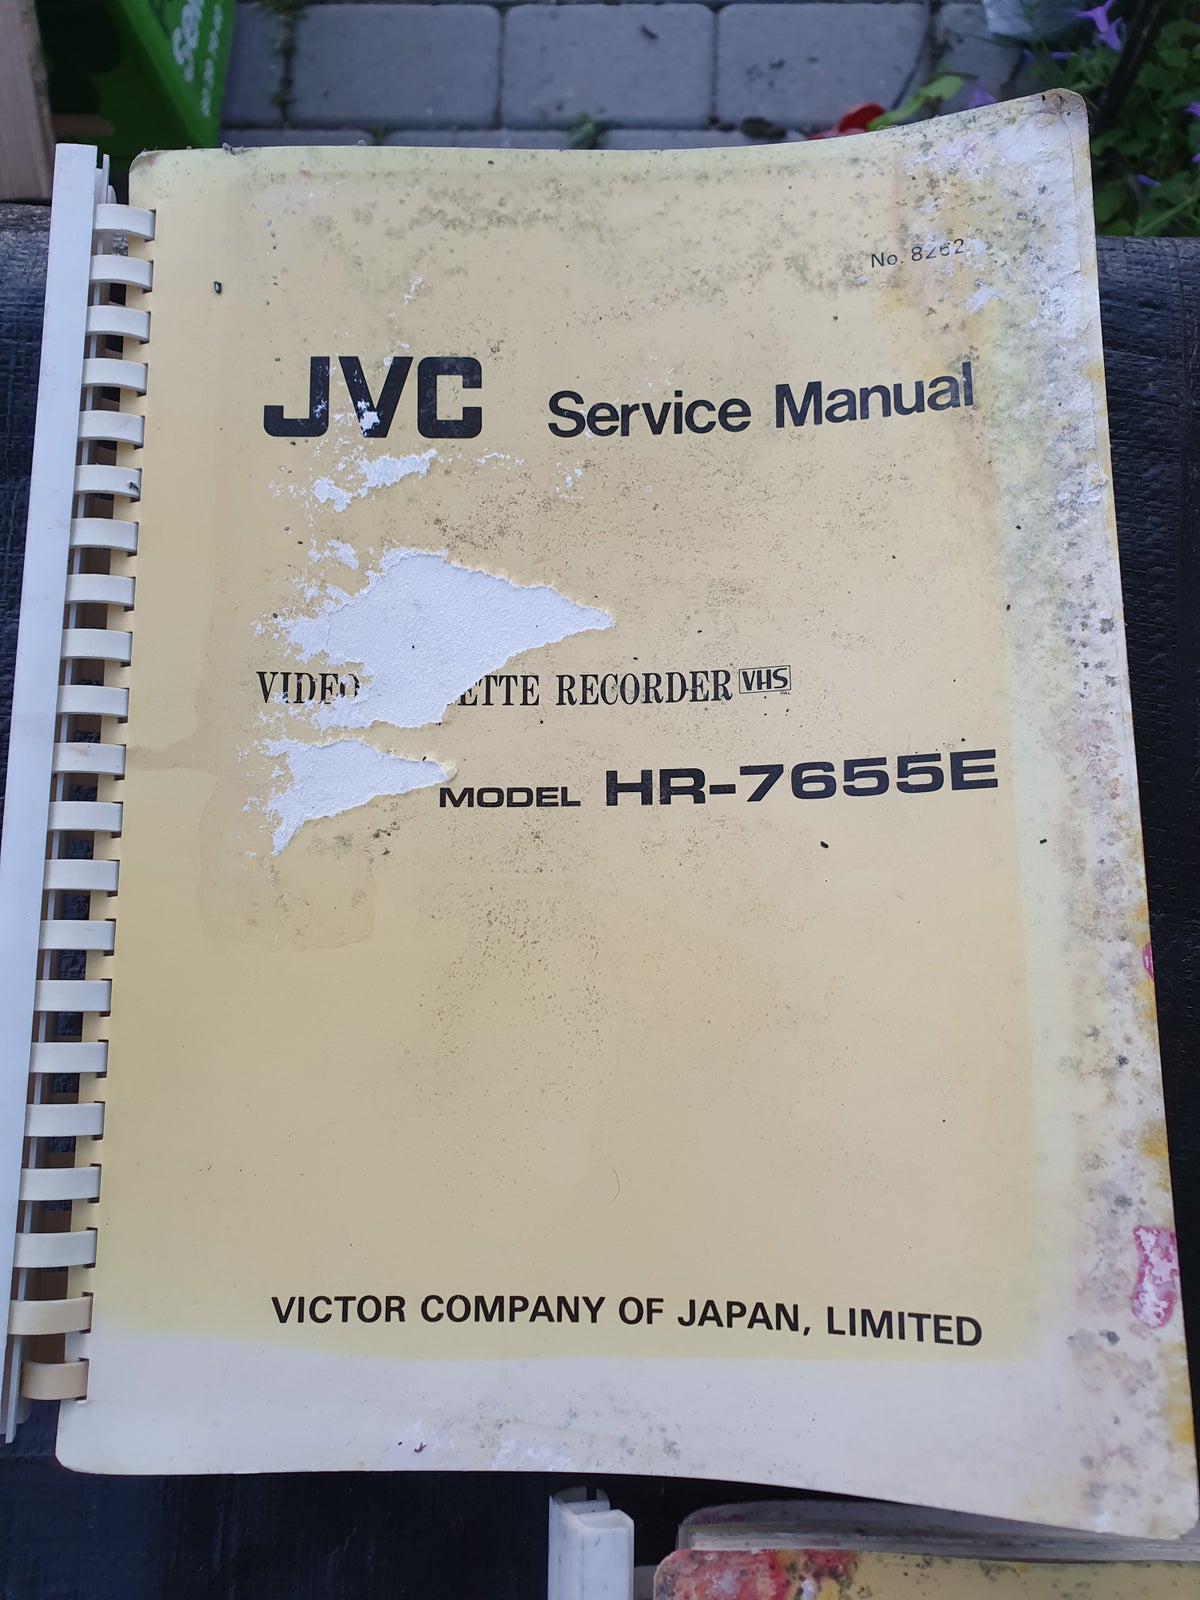 1 samling af JVC service manuel VSH video, JVC, Rimelig